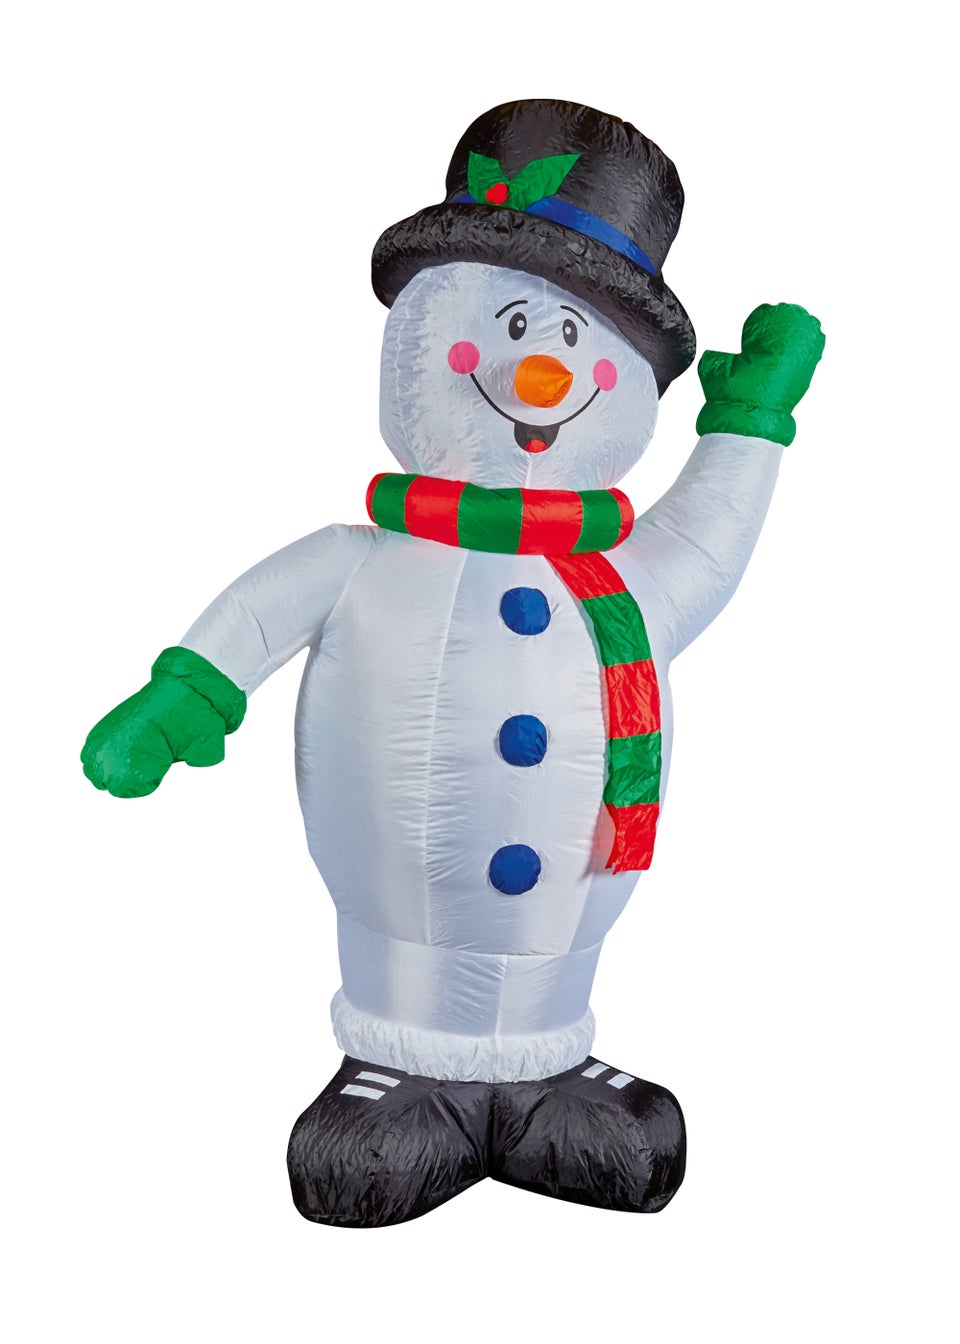 Premier Decorations 1.8m Lit Inflatable Waving Snowman